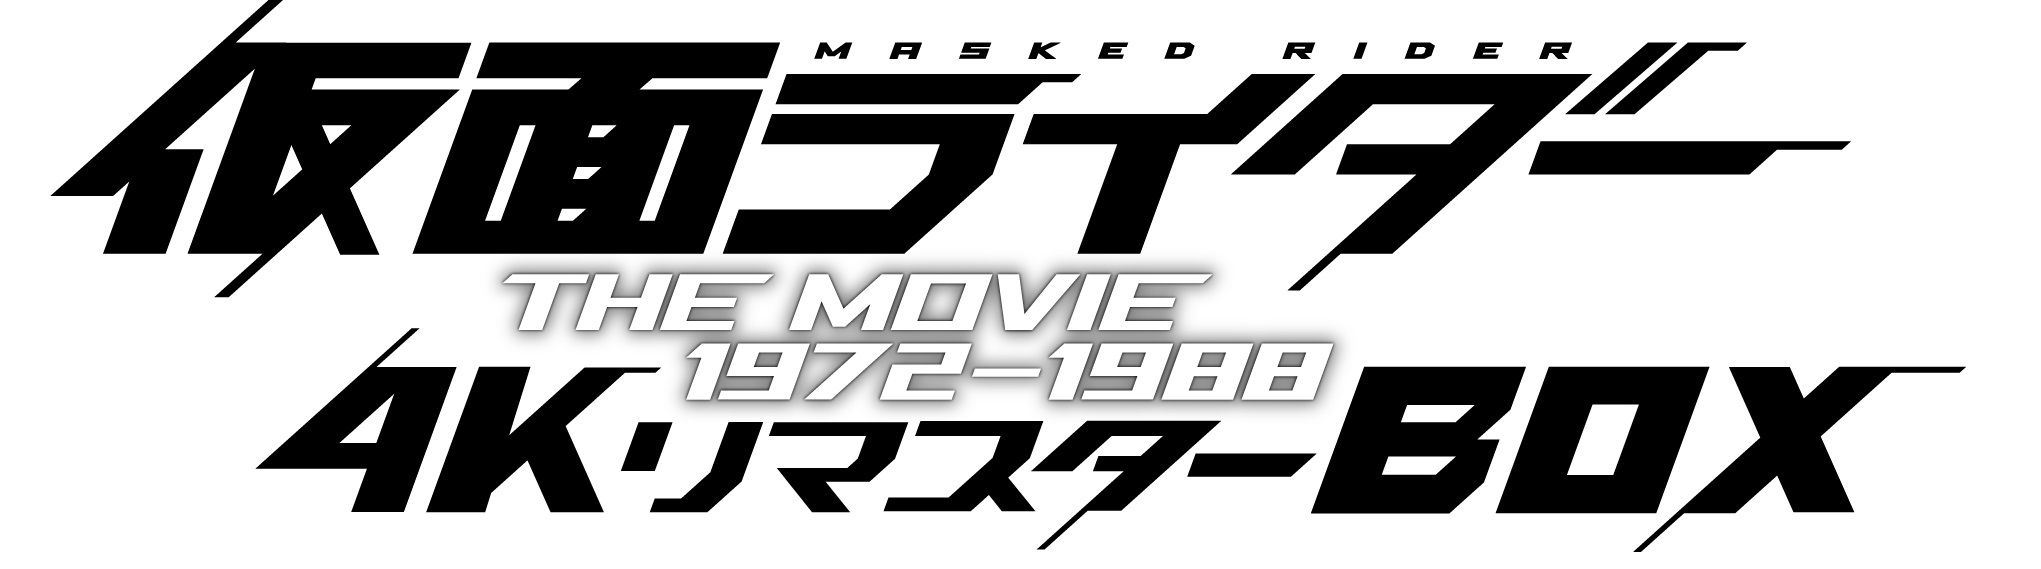 仮面ライダー THE MOVIE 1972-1988 4KリマスターBOX(4…